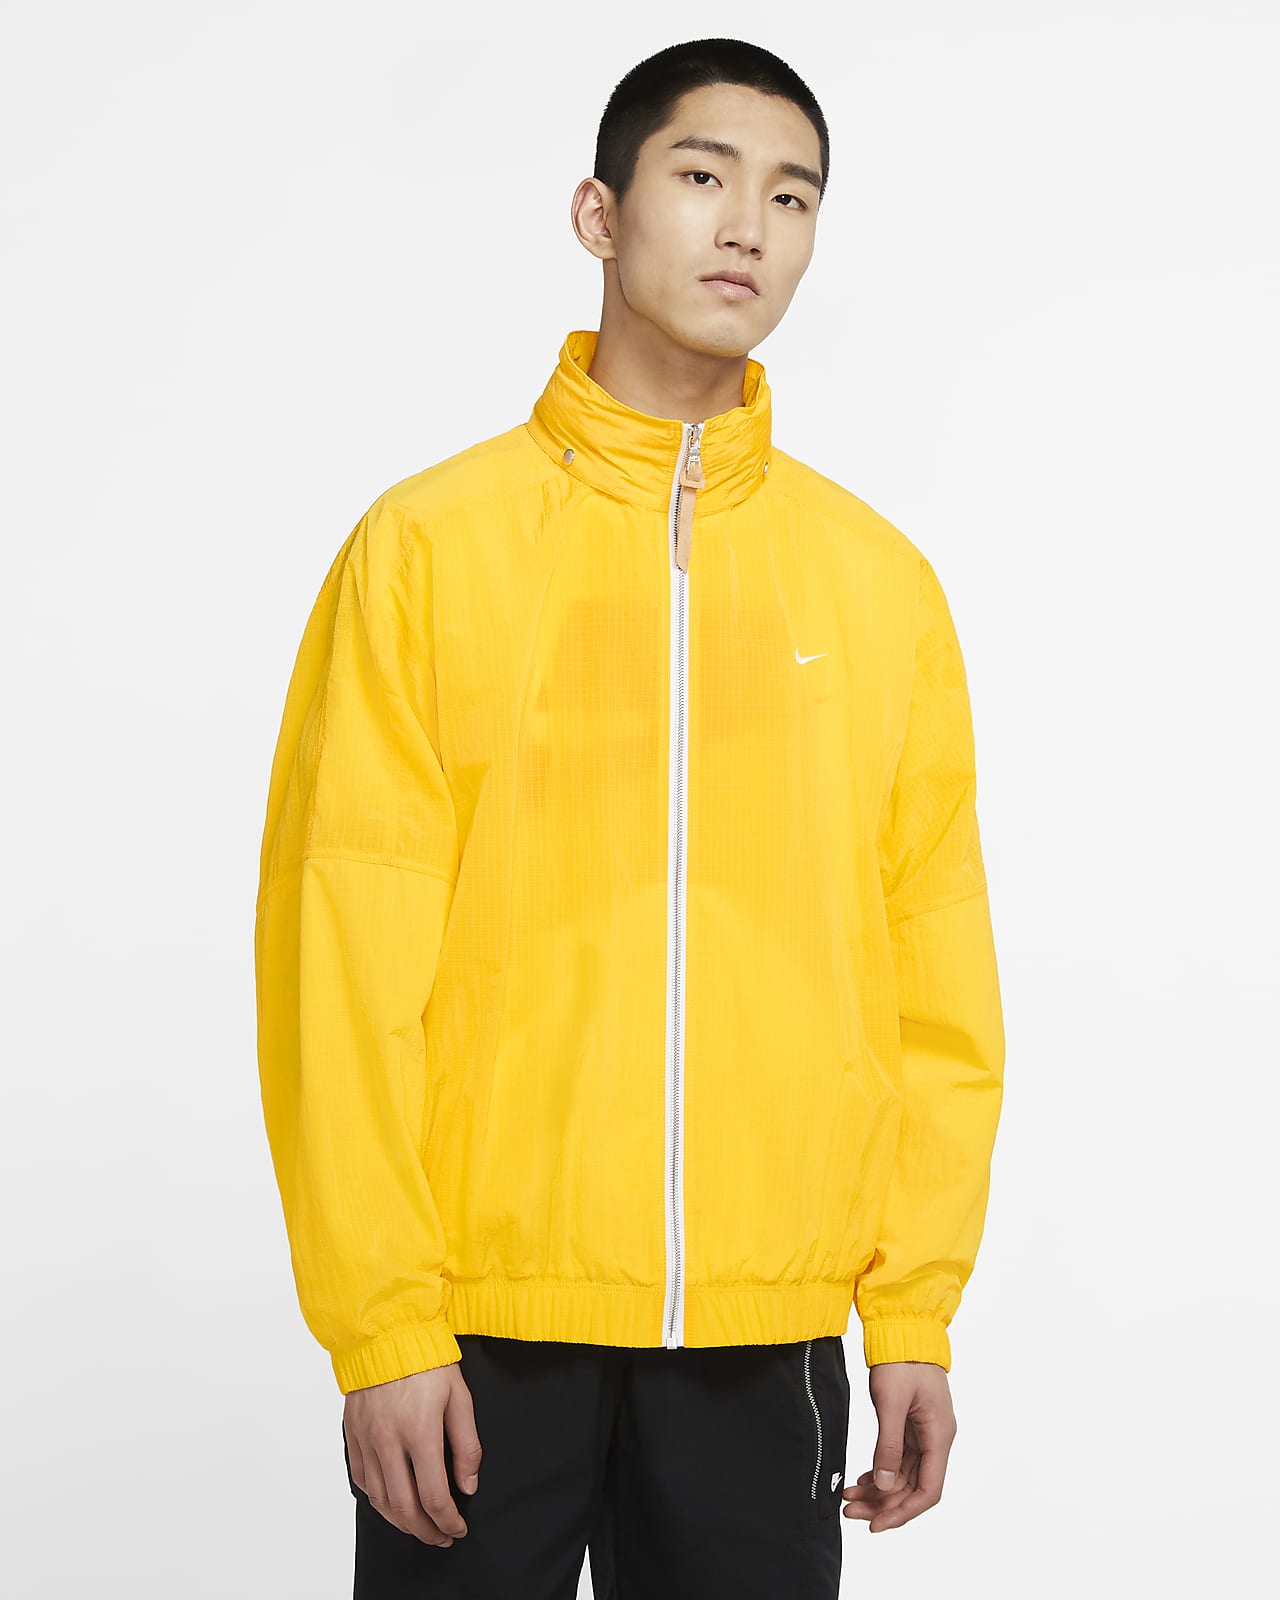 nike jacket yellow